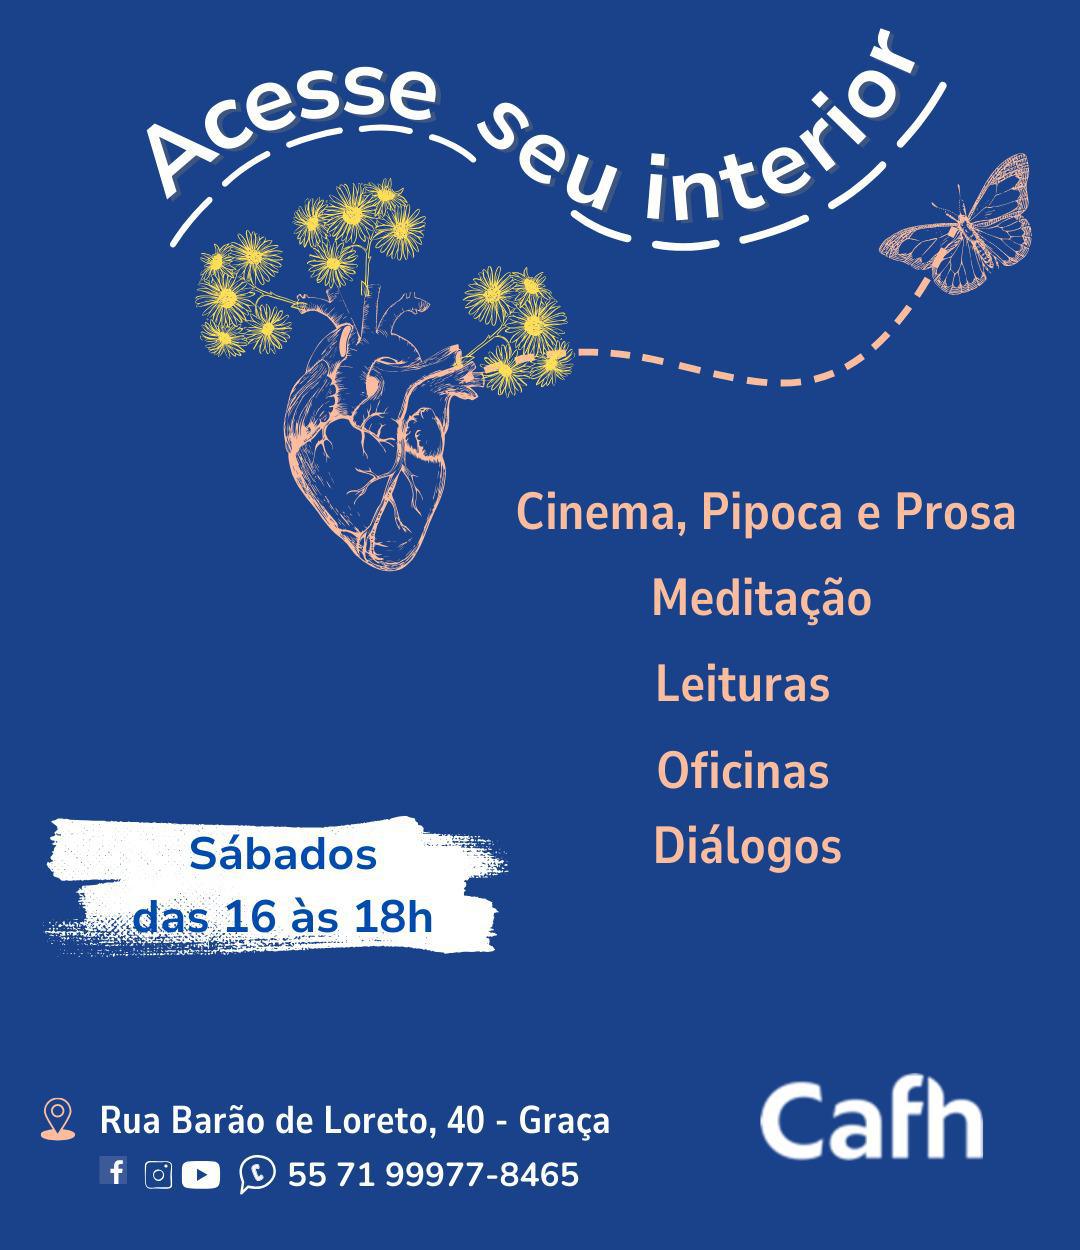 Acesse seu Interior | Cafh Brasil